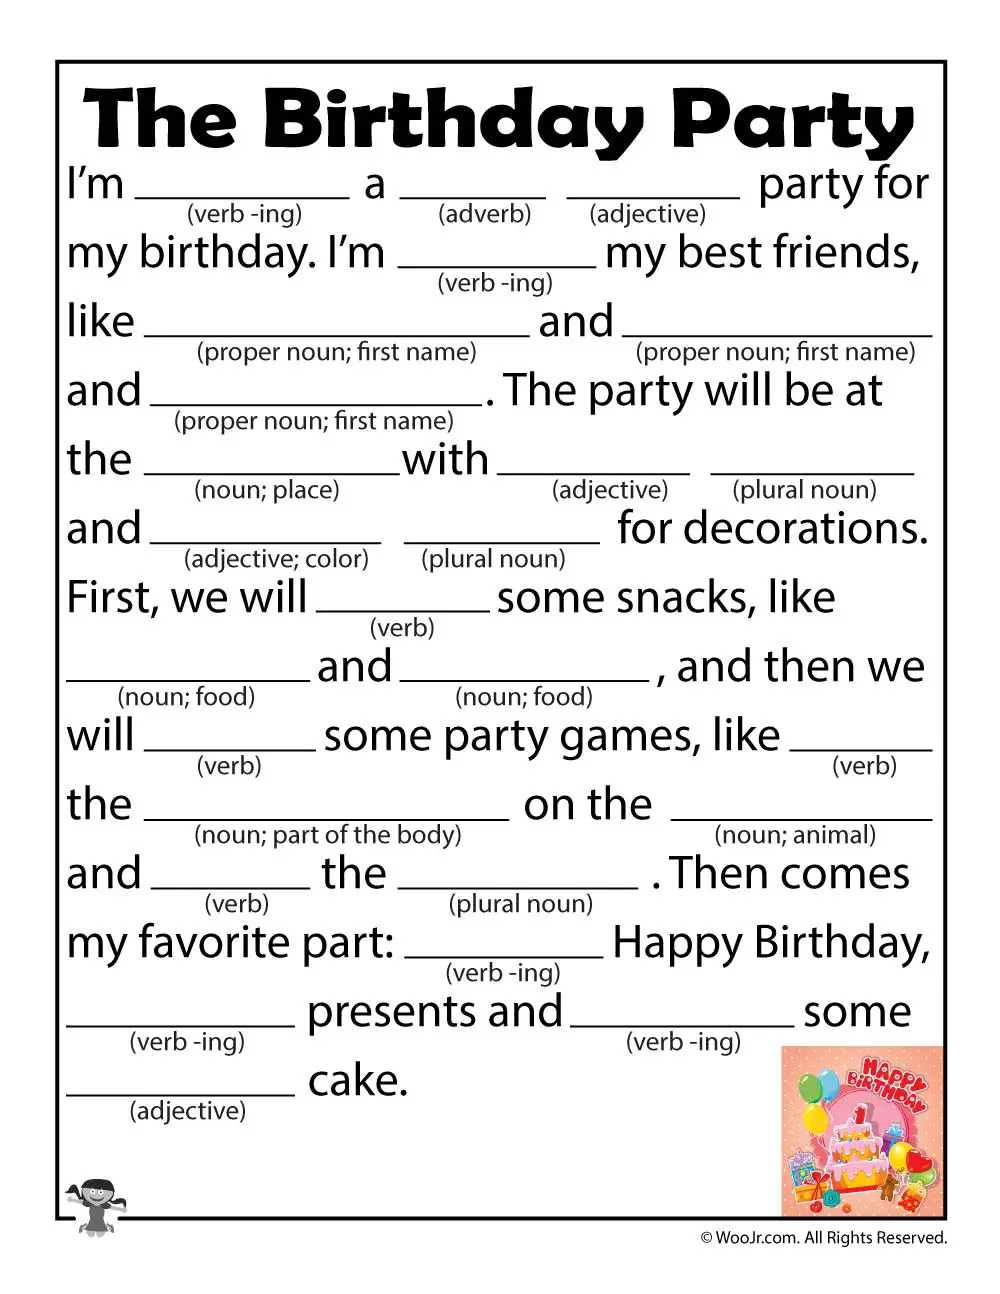 Birthday Mad Libs Printable Printable Word Searches Printable Mad Libs